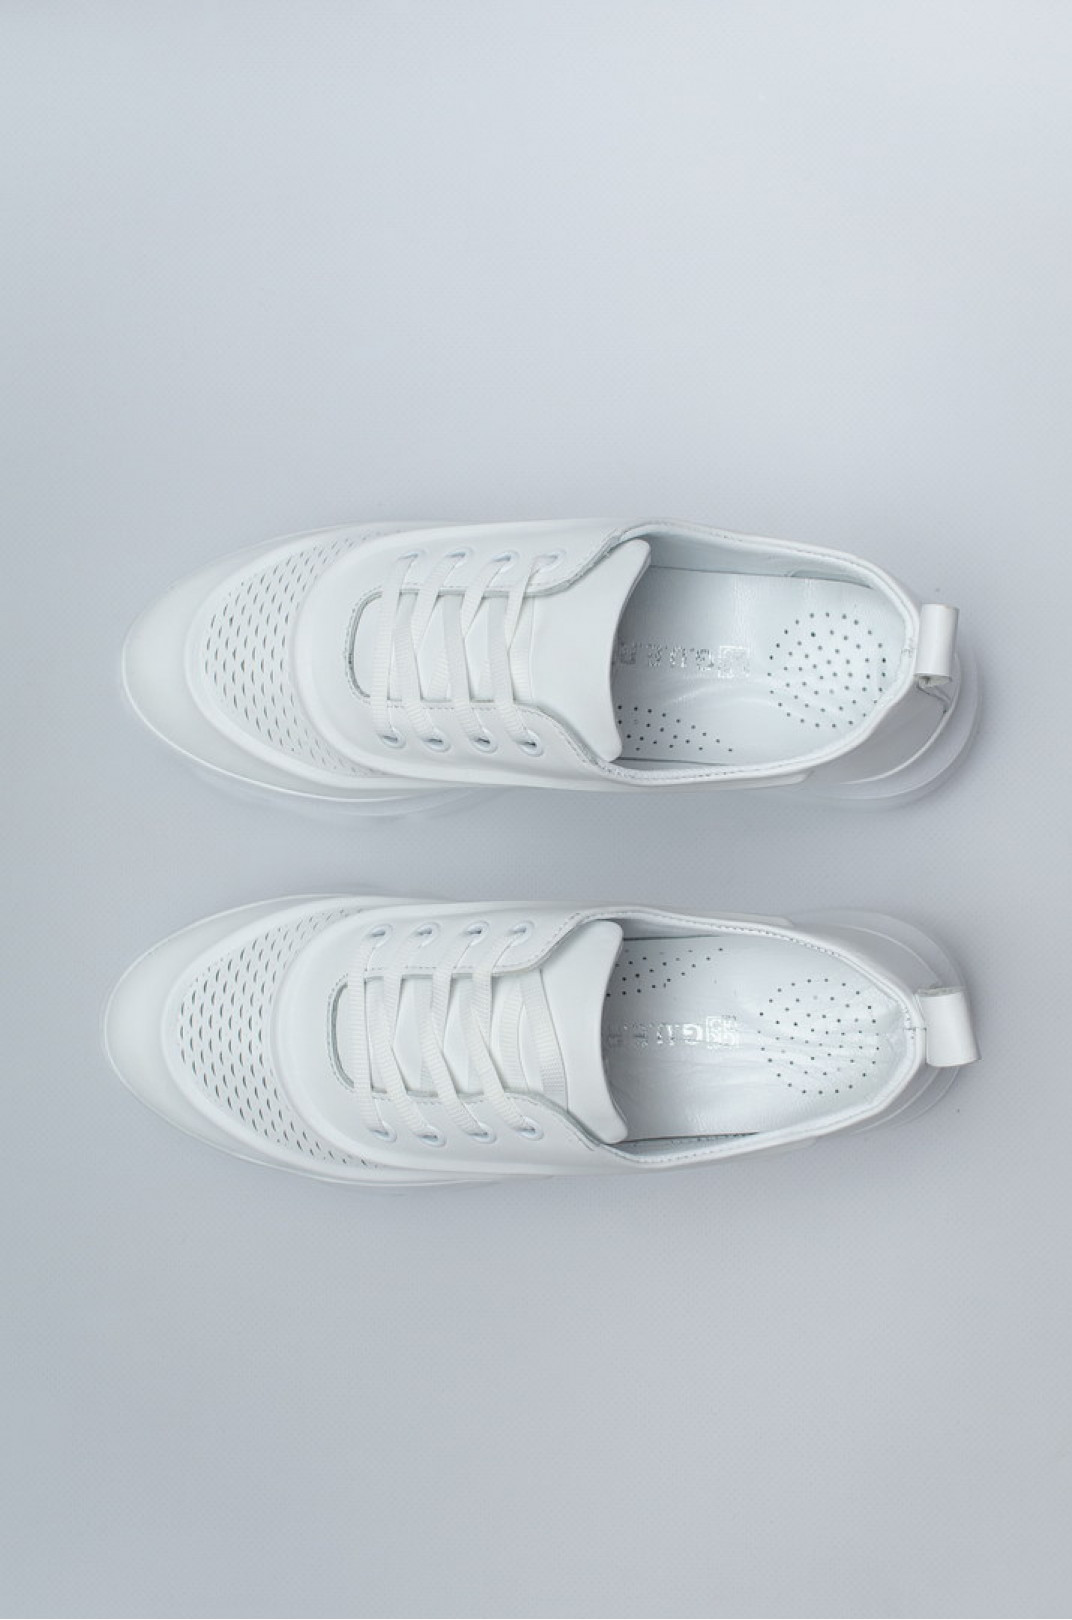 Стильные белые кроссовки с перфорацией больших размеров